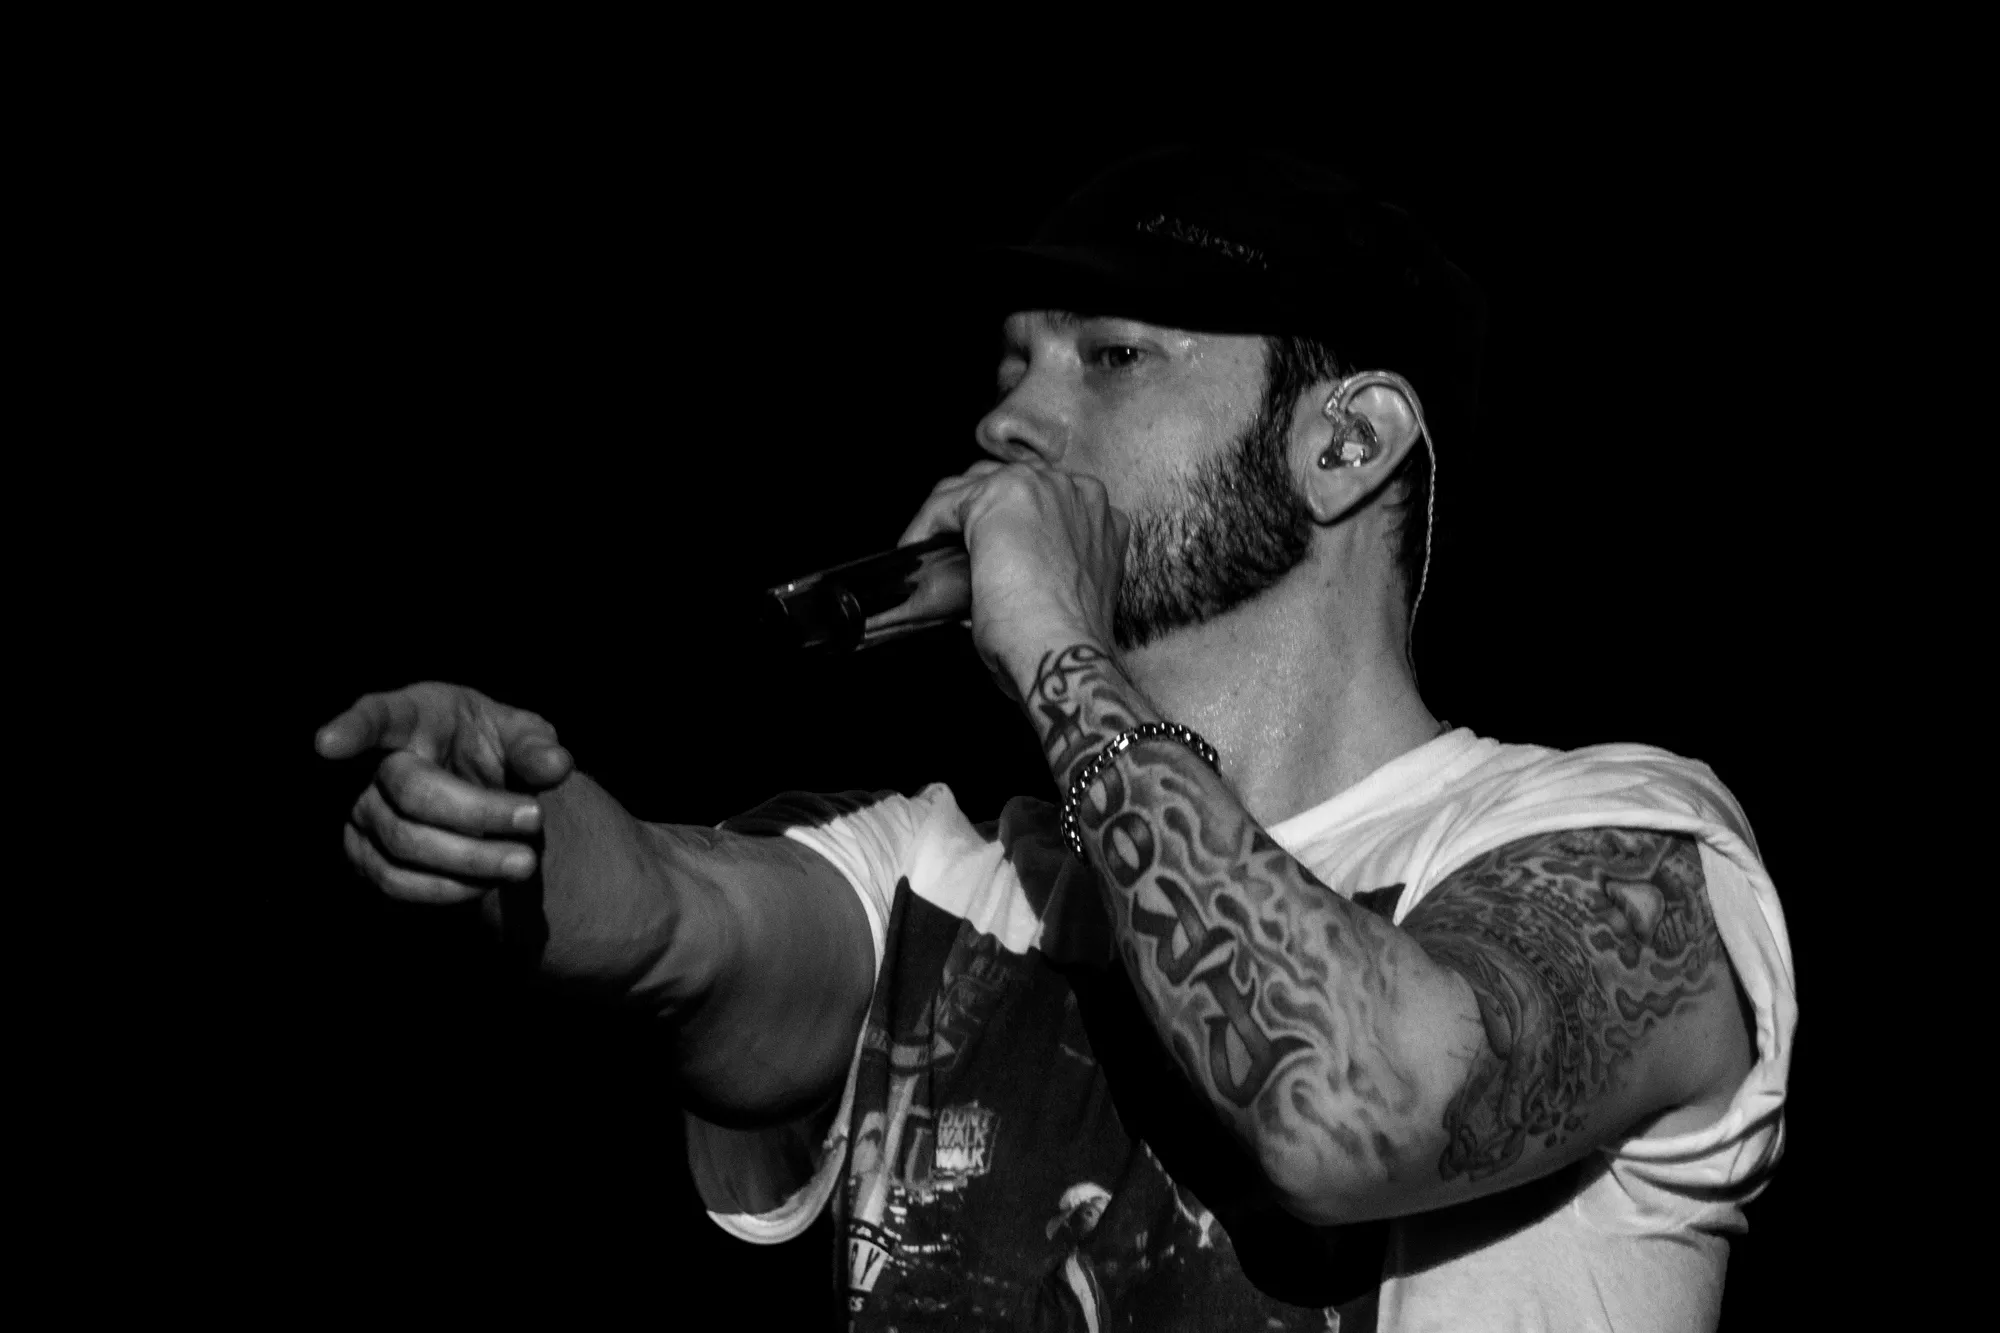 Eminem svarer Machine Gun Kelly igen på diss tracket "Killshot"